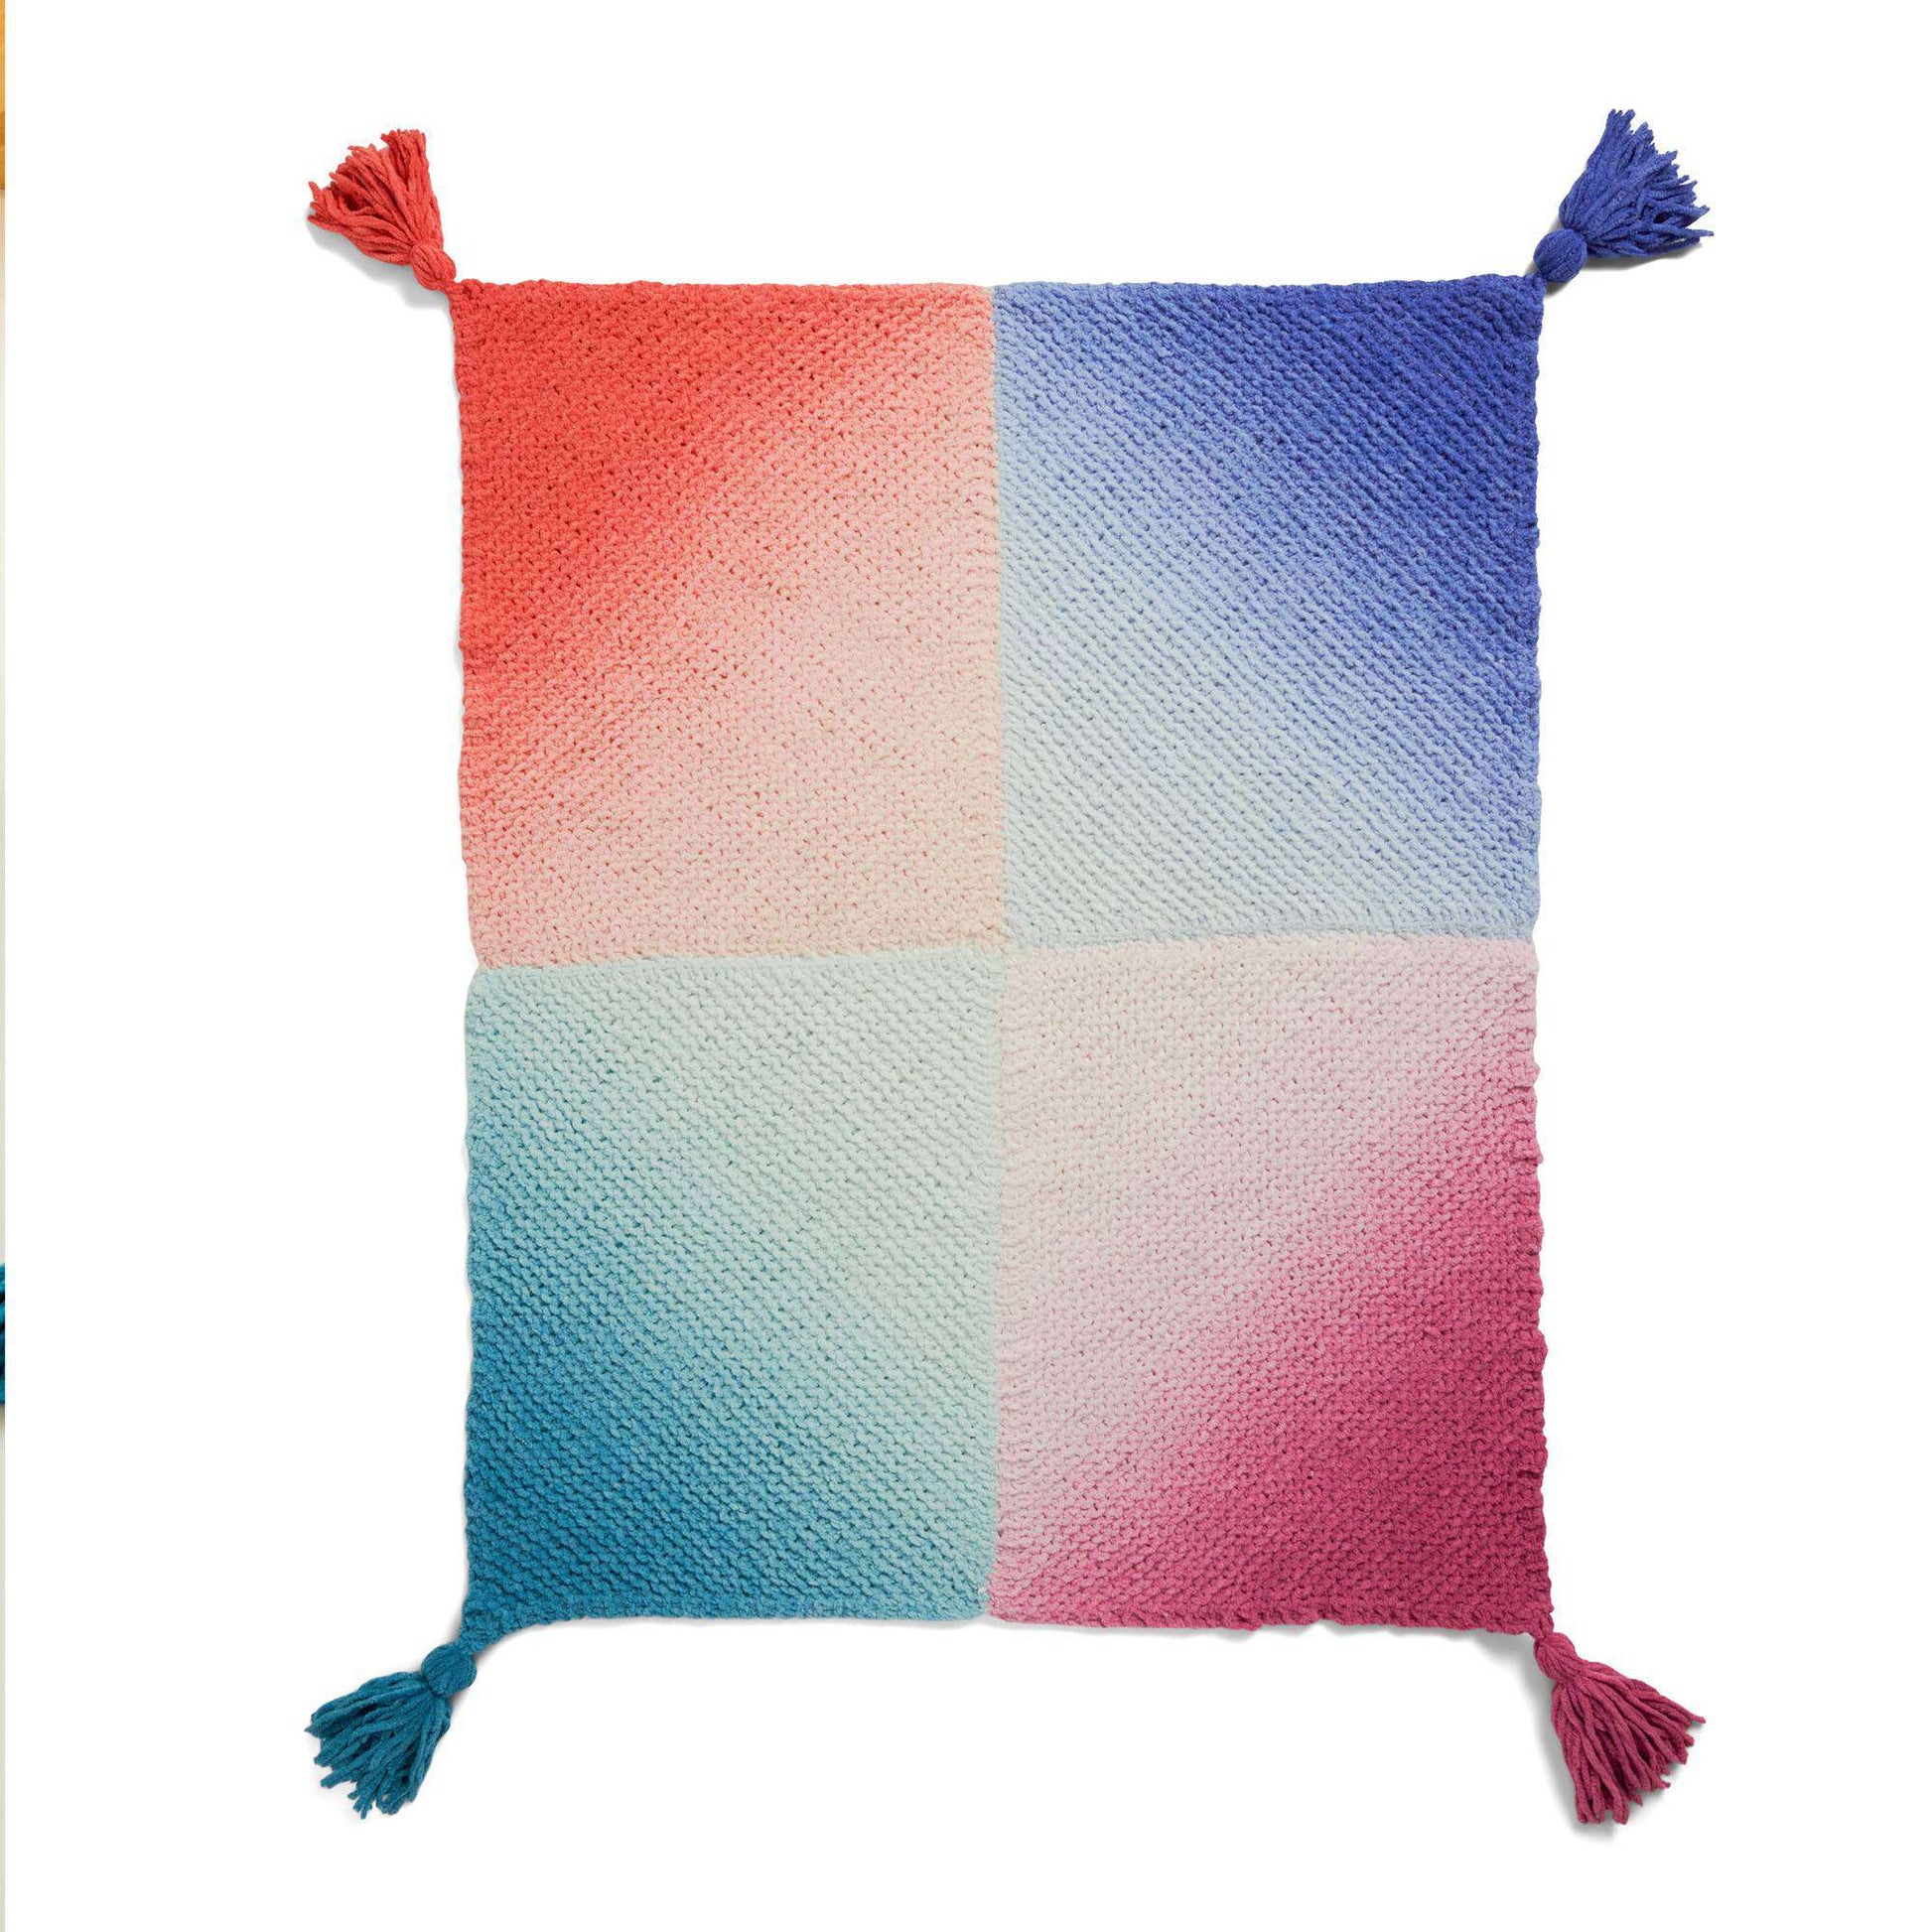 Free Bernat Fade Out Knit Blanket Pattern